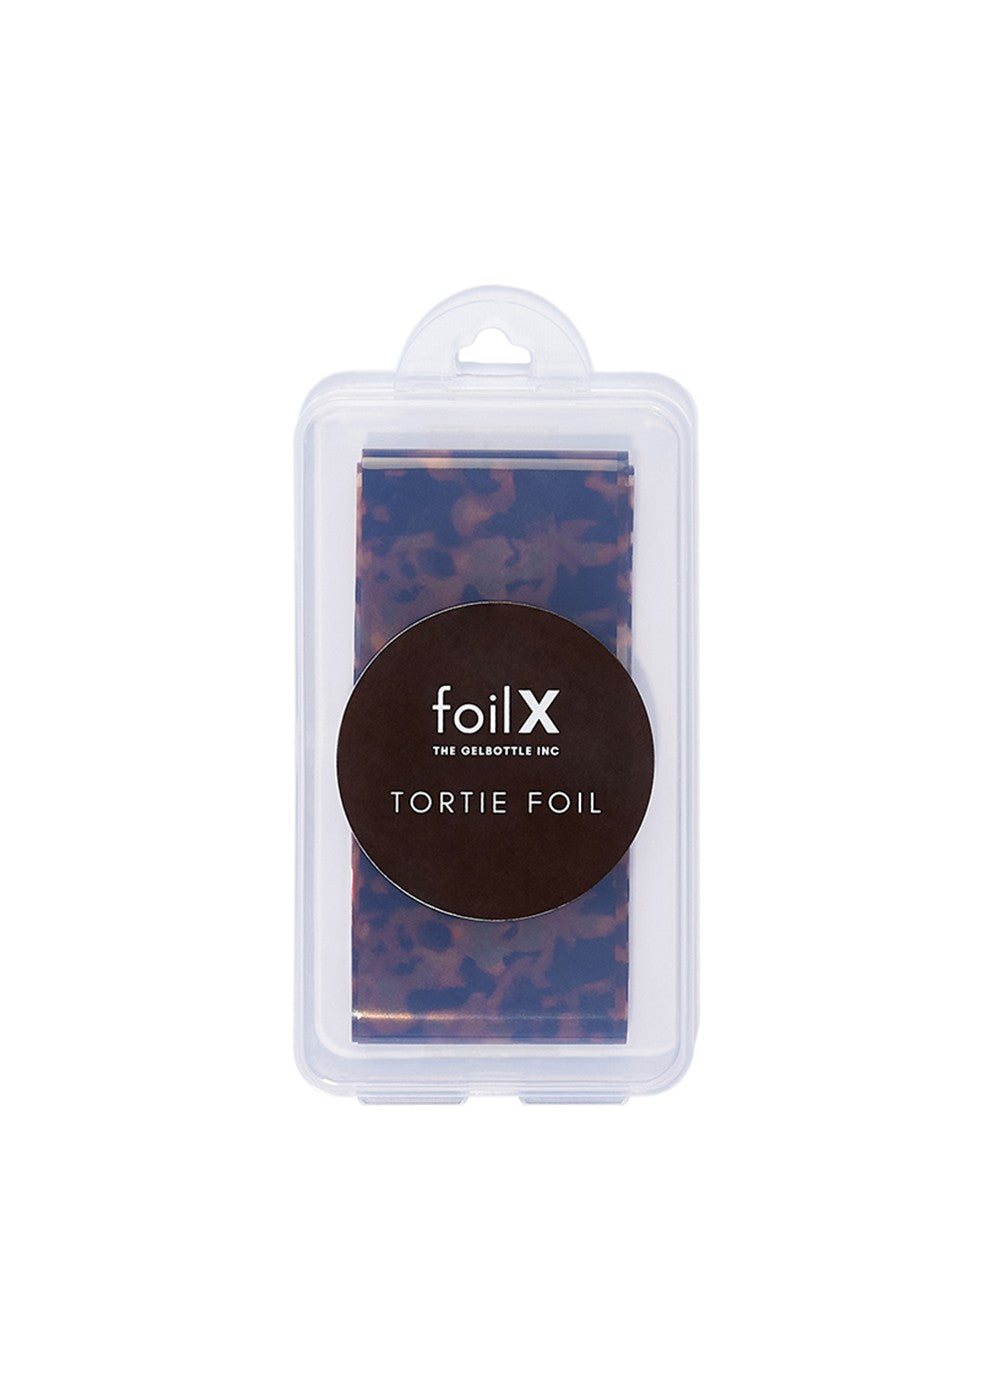 The GelBottle FoilX Tortie